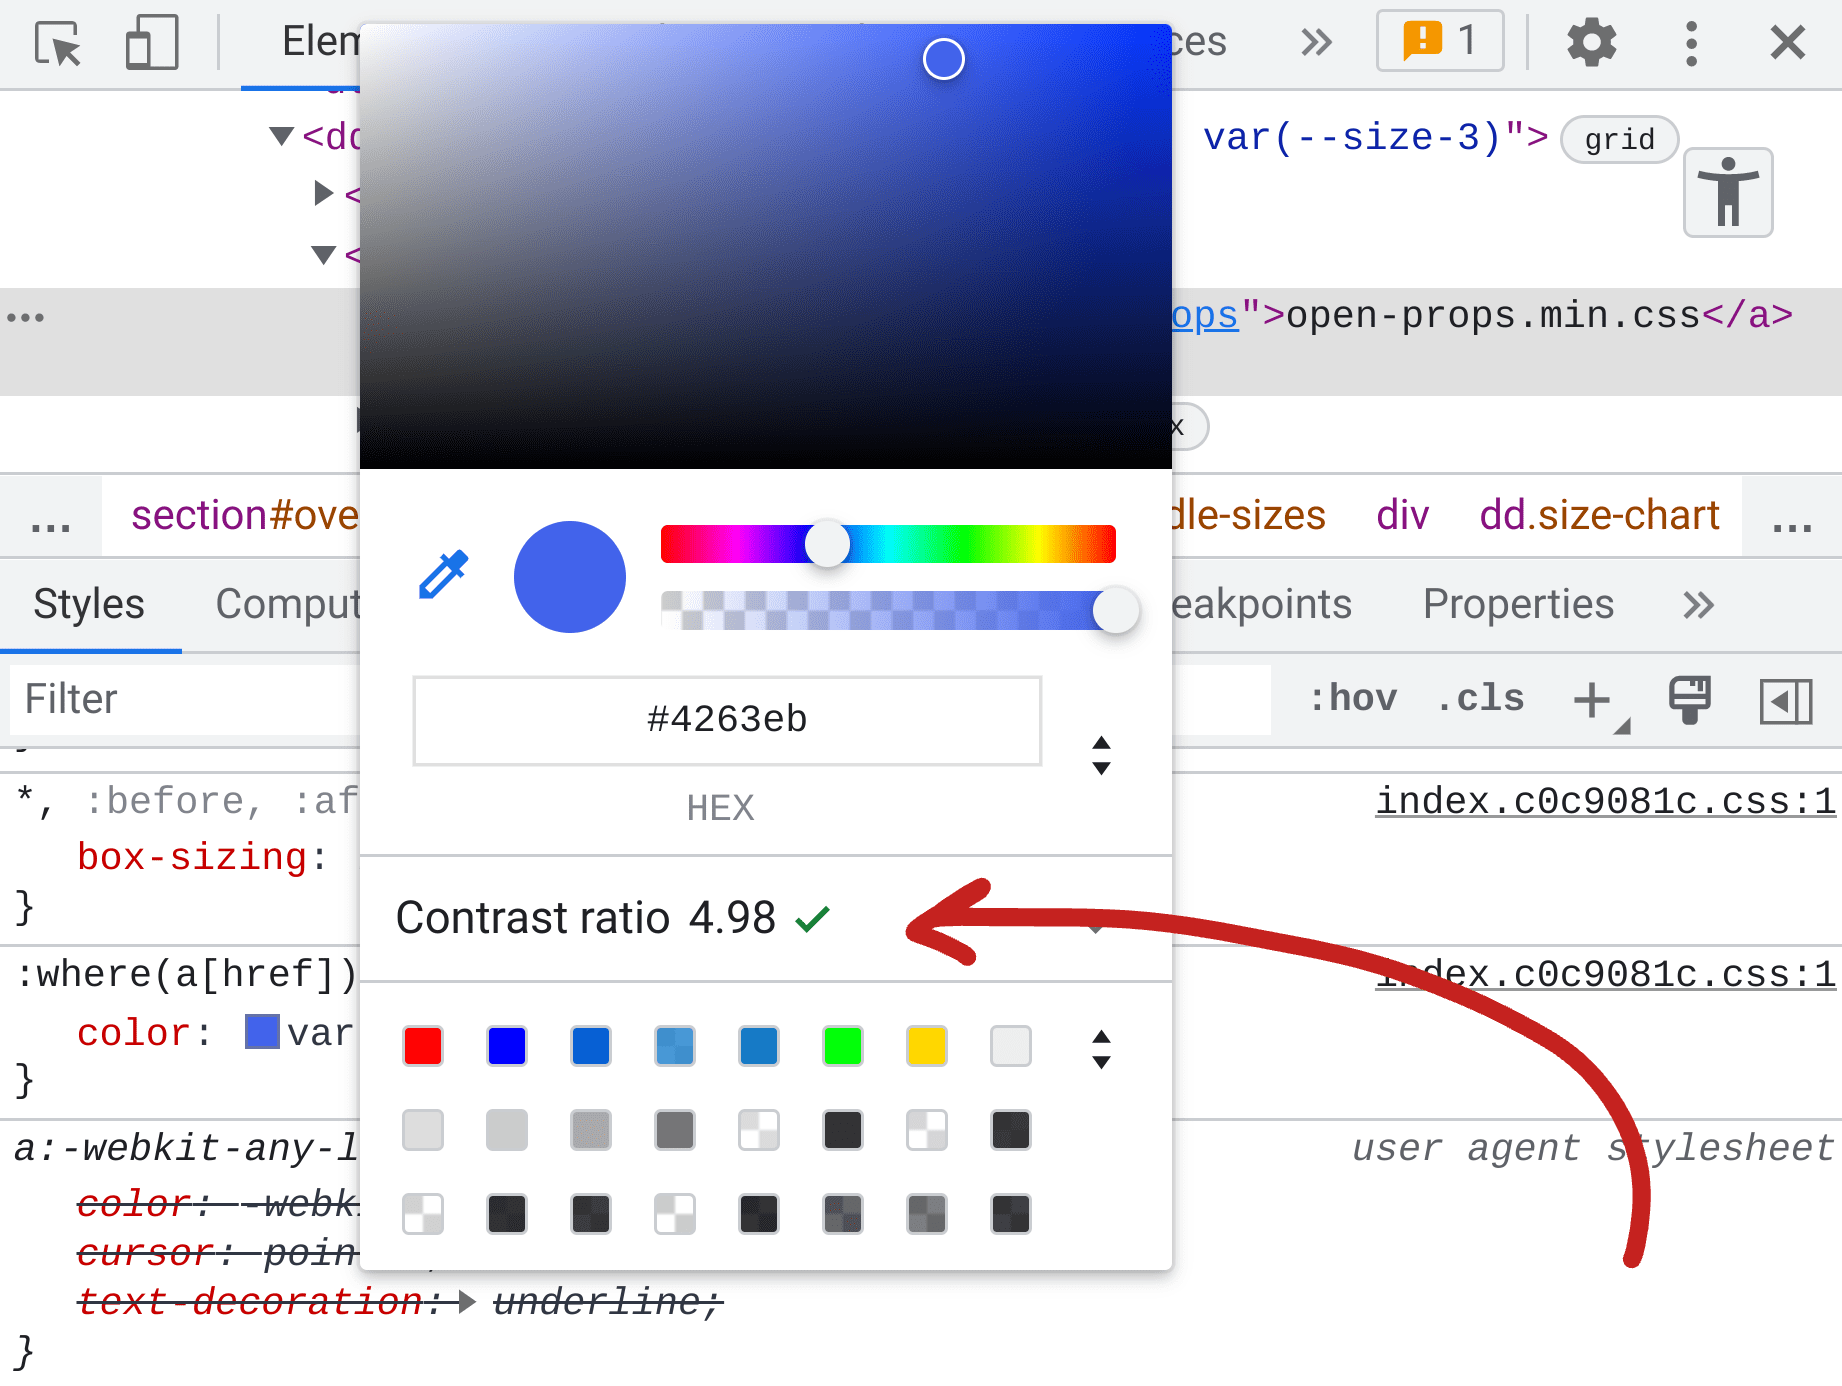 Снимок экрана панели «Элементы DevTools», в стилях показана палитра цветов, а посередине указан коэффициент контрастности цвета 4,98.